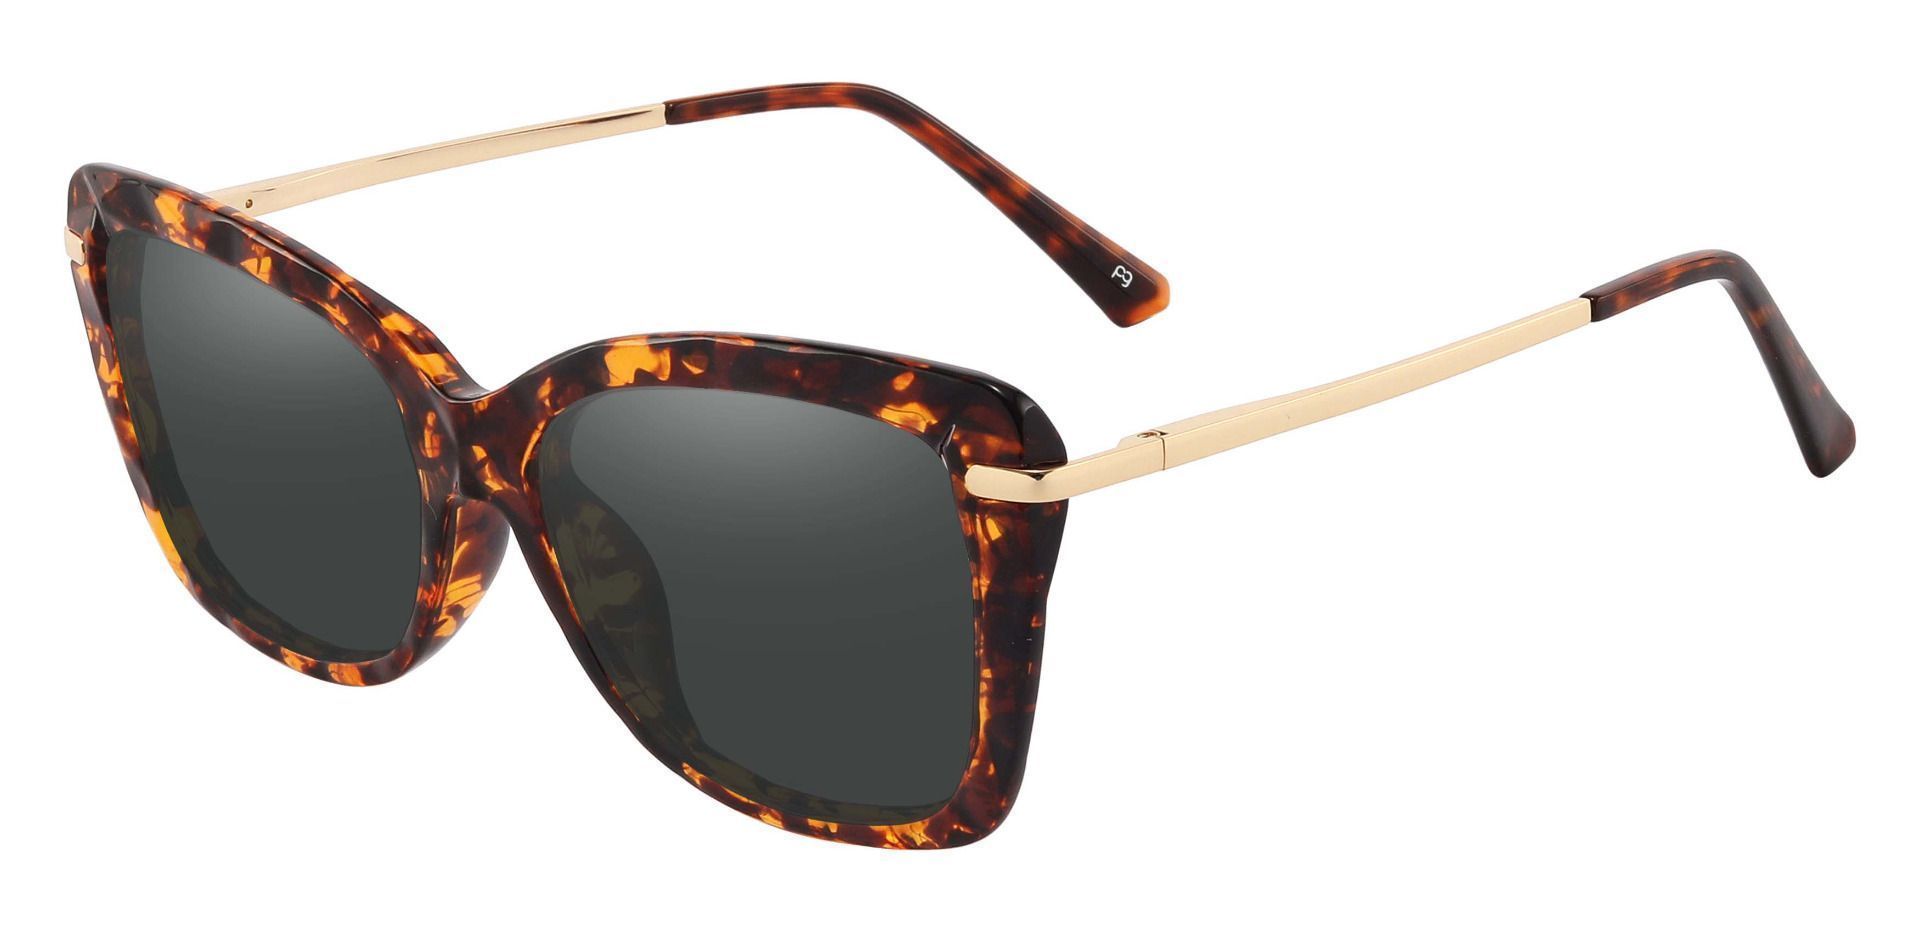 Shoshanna Rectangle Progressive Sunglasses - Tortoise Frame With Gray Lenses